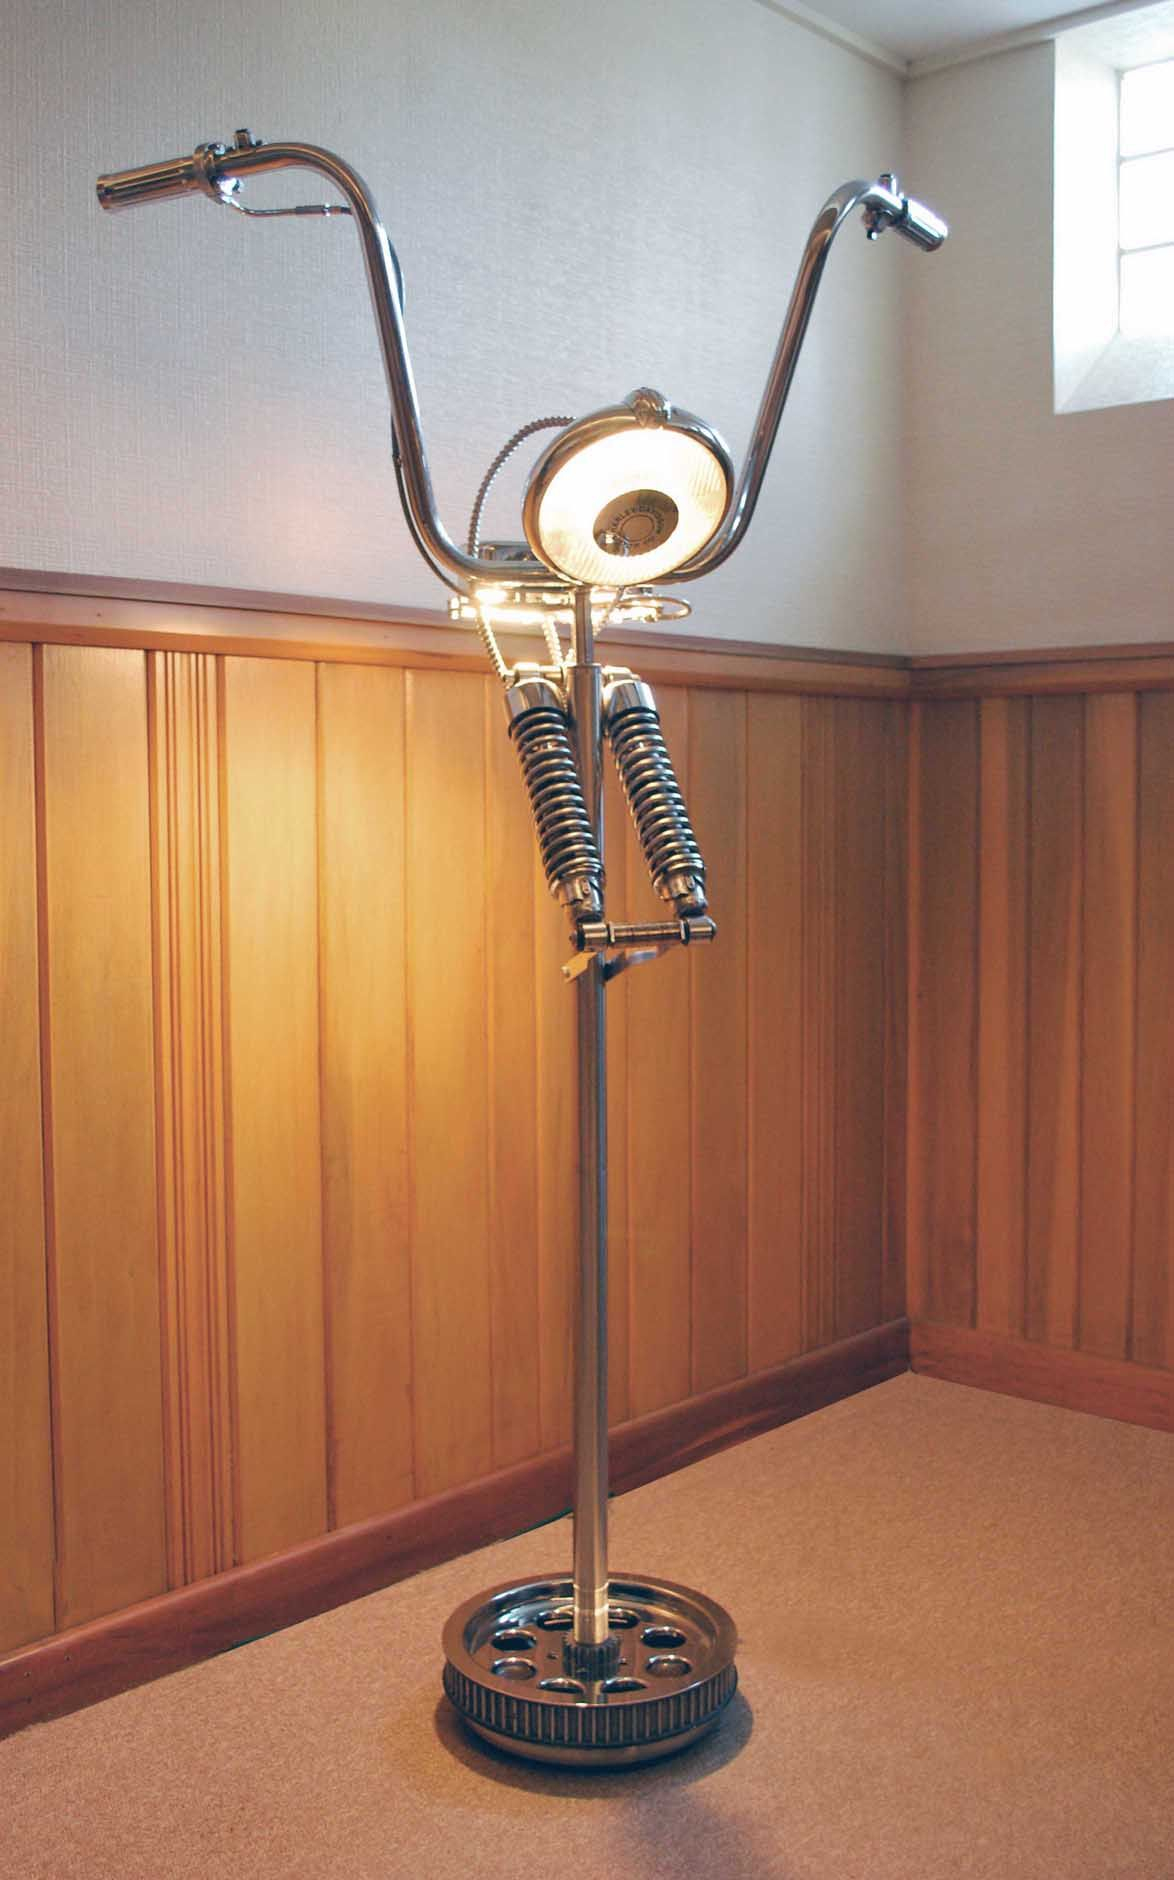 Artwork Apehanger Floor Lamp Apehanger Diy Lampen in dimensions 1174 X 1880